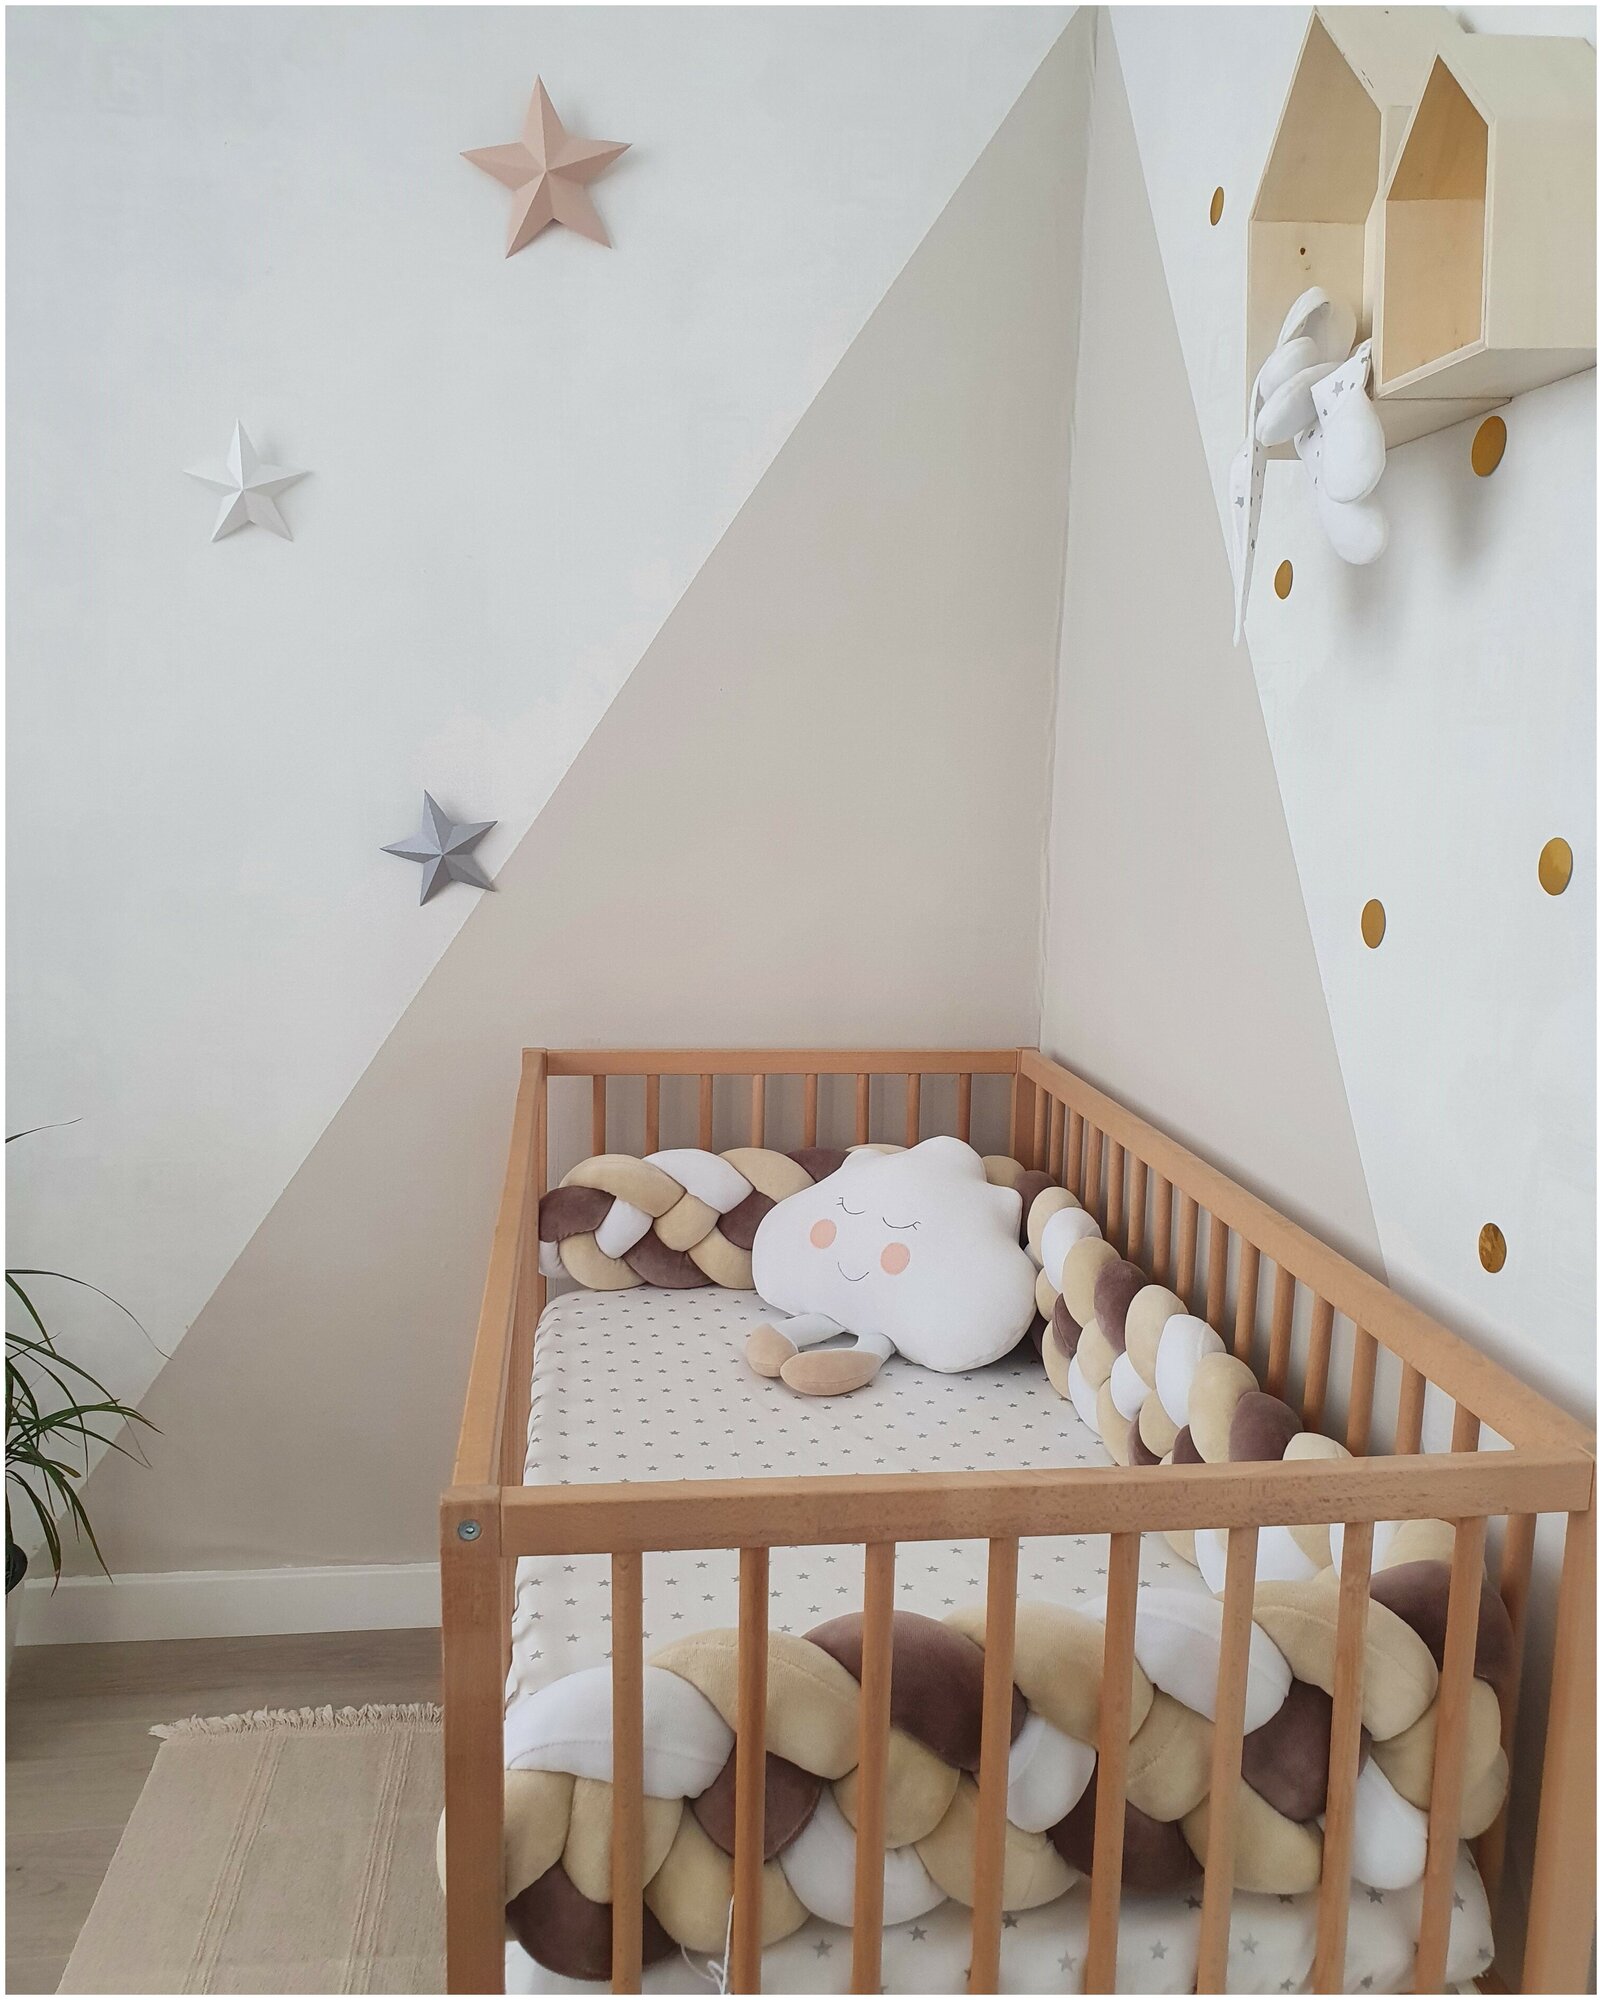 Бортик-коса (косичка) в детскую кроватку из 4 лент для малышей и новорожденных 240 см: подходит для круглой, овальной и прямоугольной кроватей